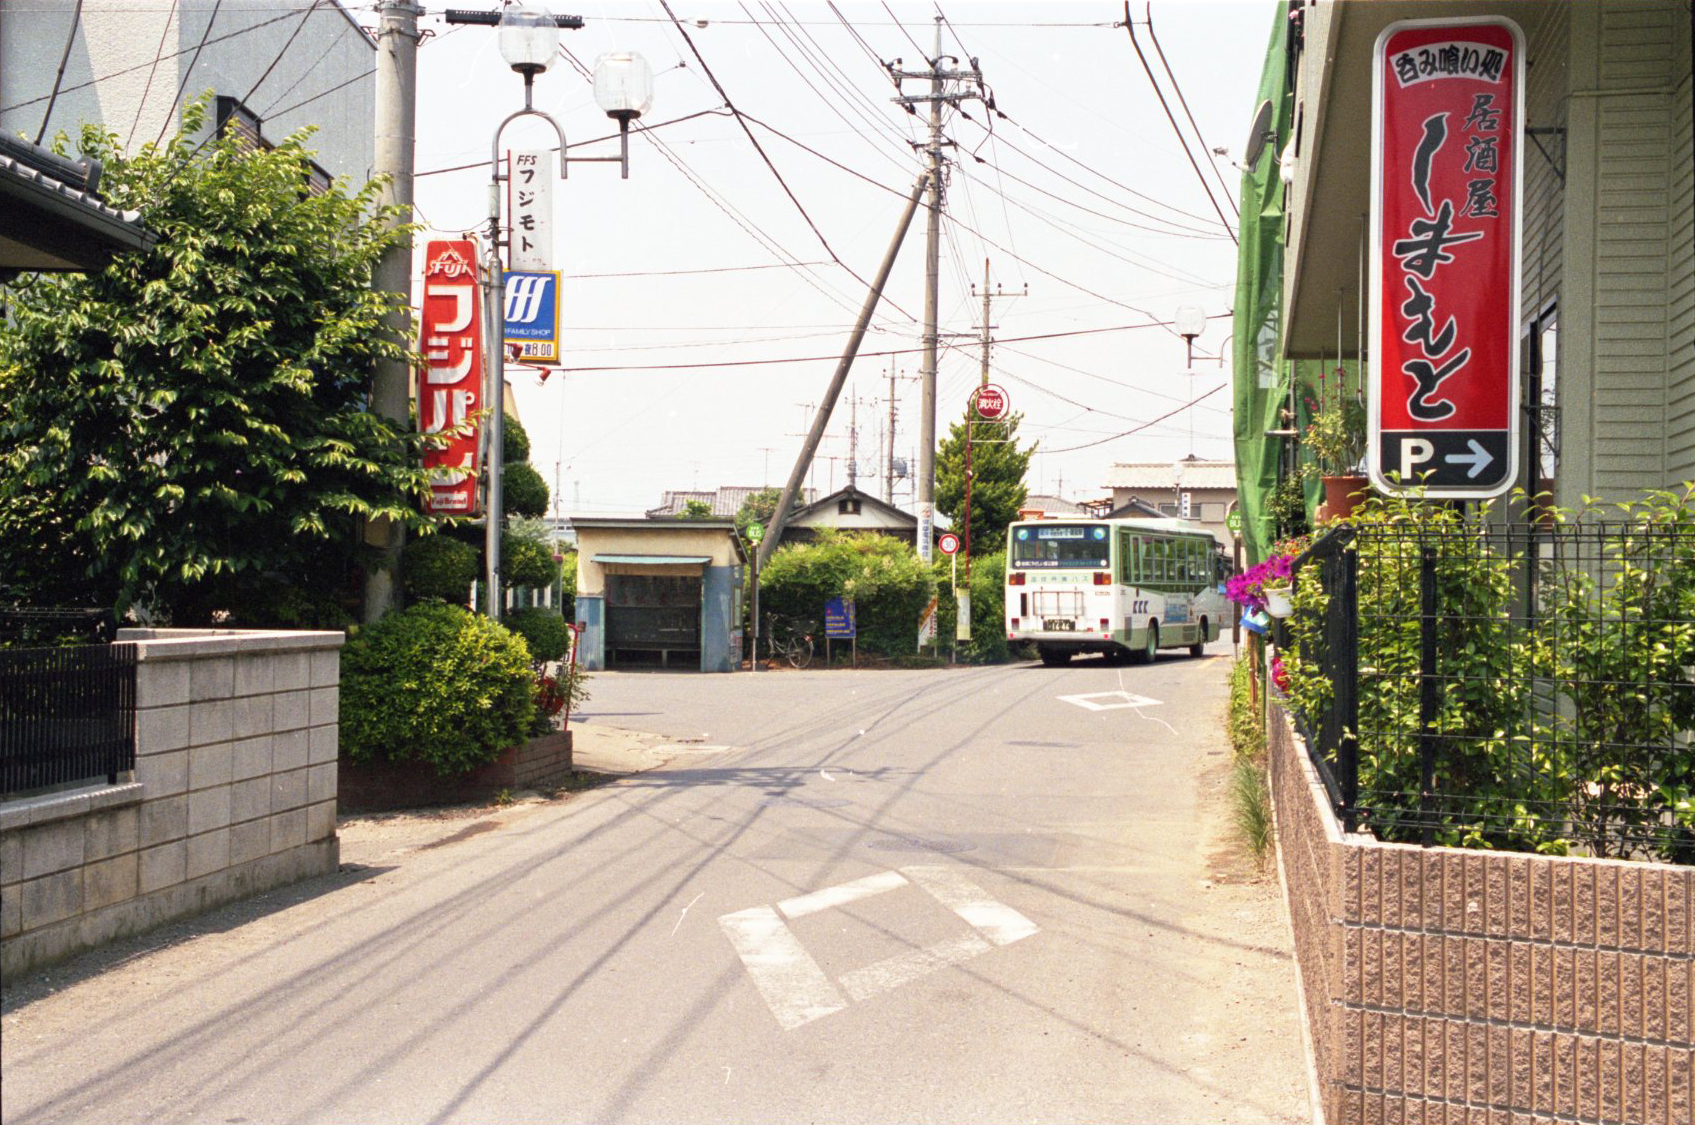 市営住宅バス停付近(浅間)[平成11(1999)年] 双柳1158付近より